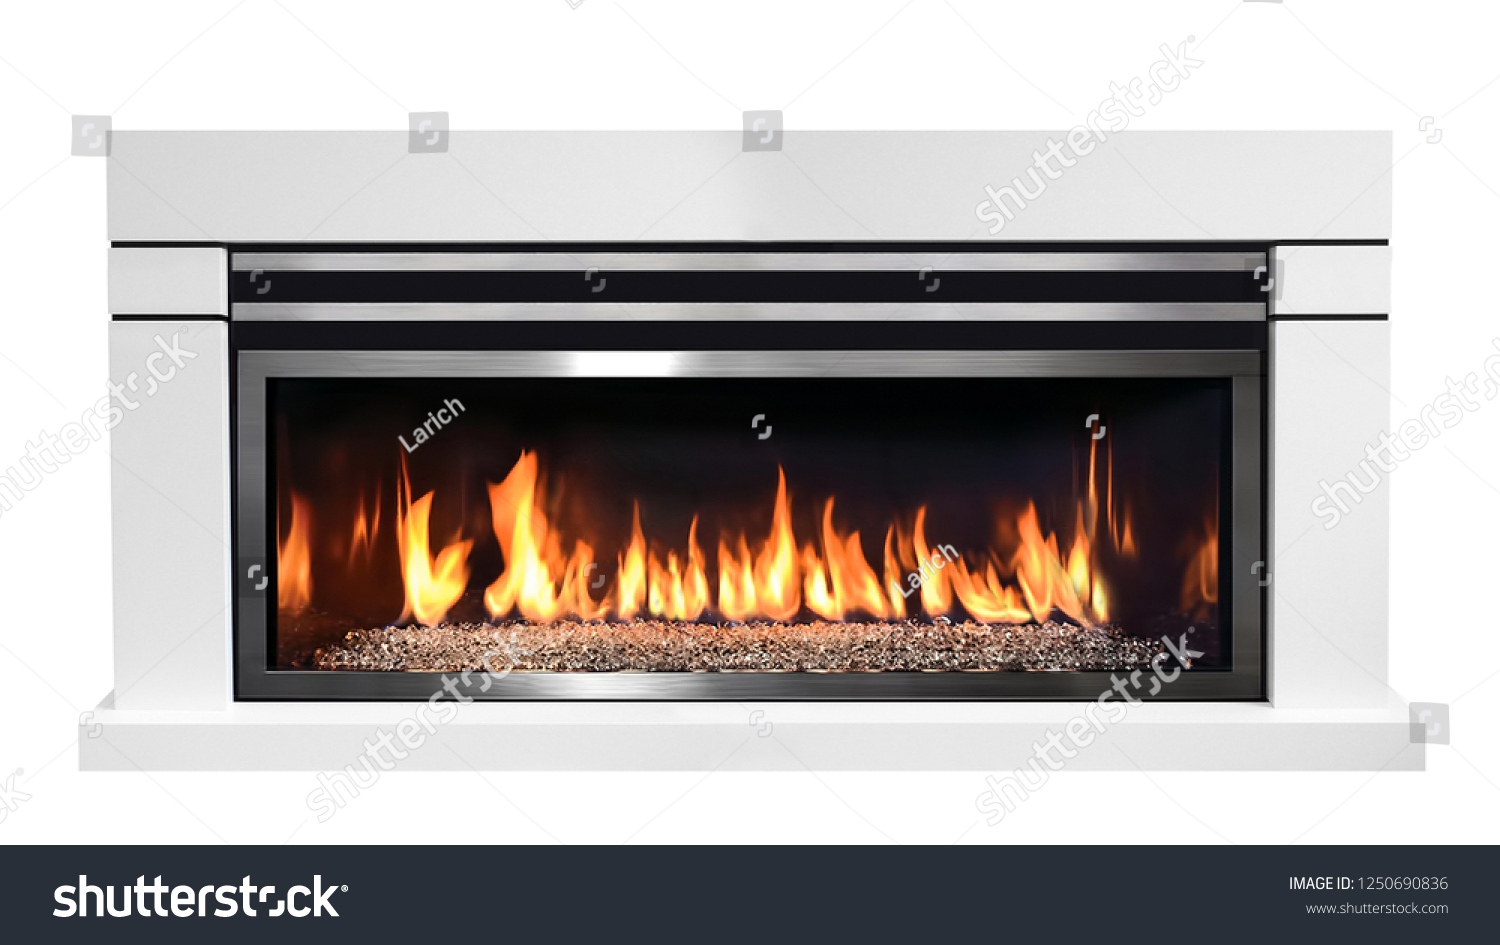 Burning gas fireplace isolated on white background. #1250690836